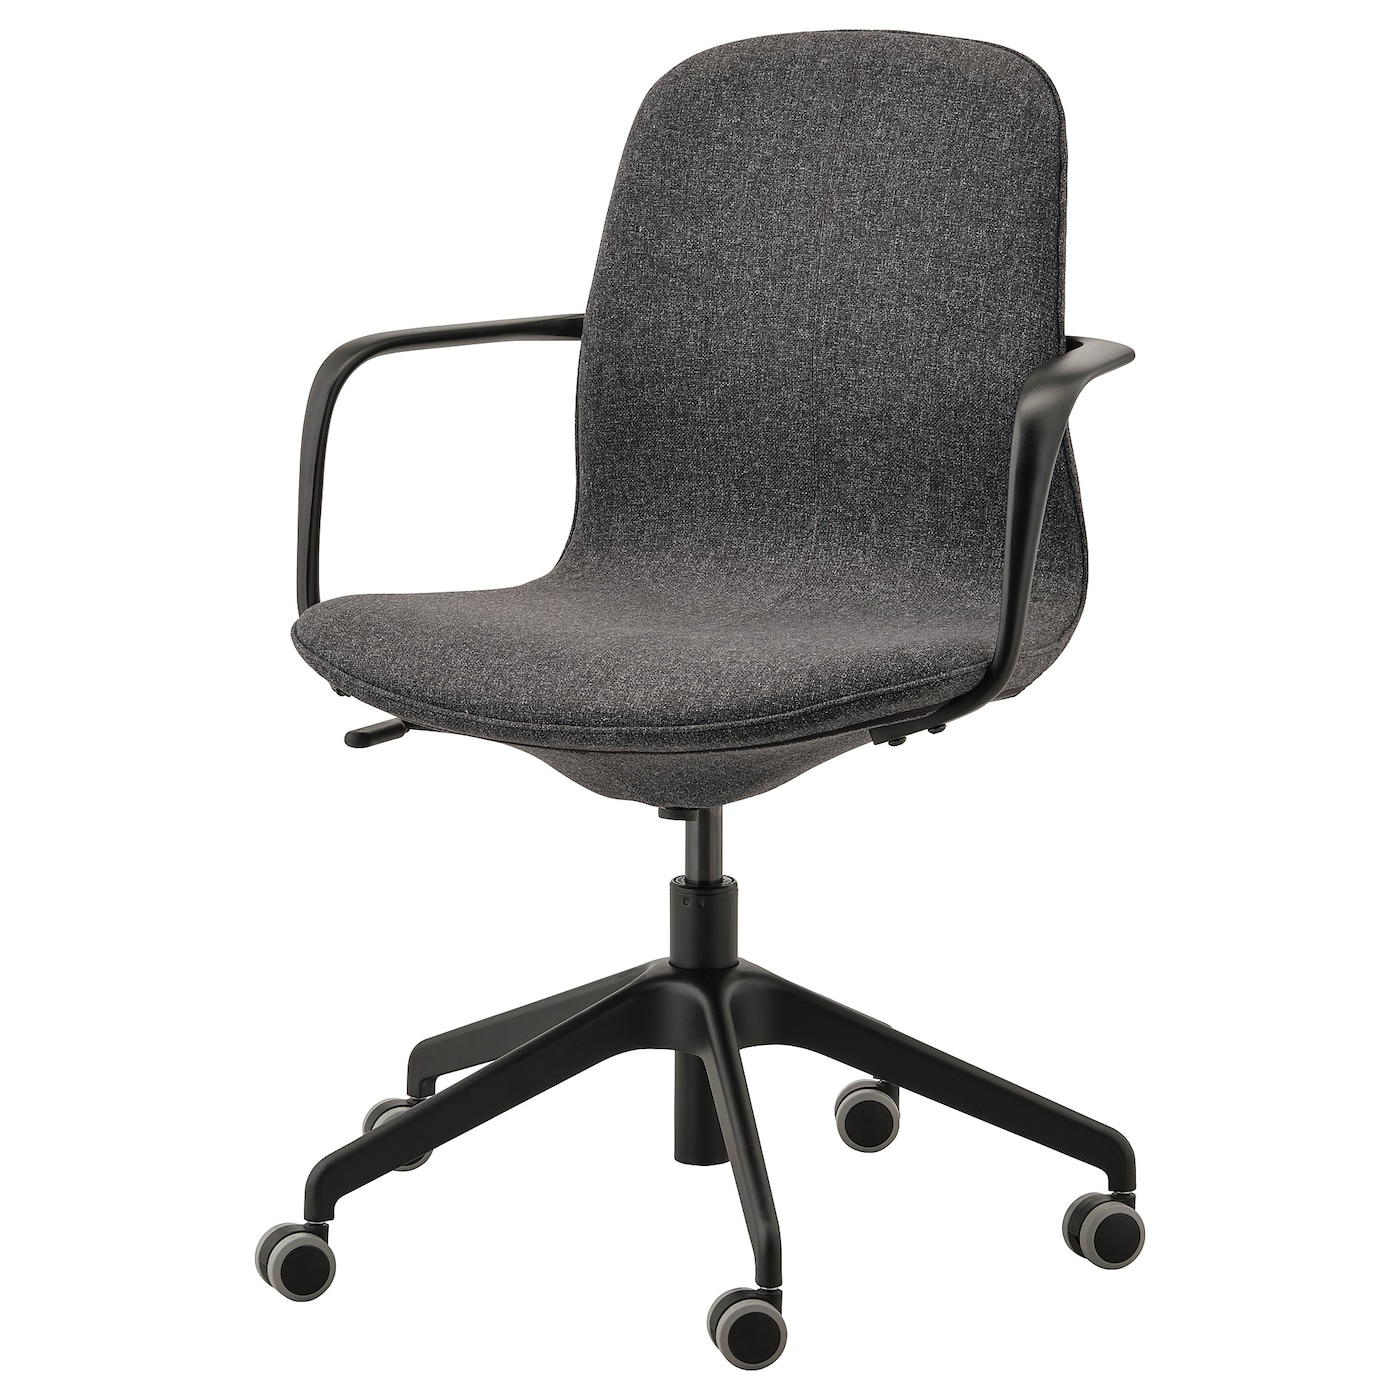 Офисный стул - IKEA LÅNGFJÄLL/LANGFJALL, 68x68x92см, темно-серый/основание стула черный, ЛОНГФЬЕЛЛЬ ИКЕА